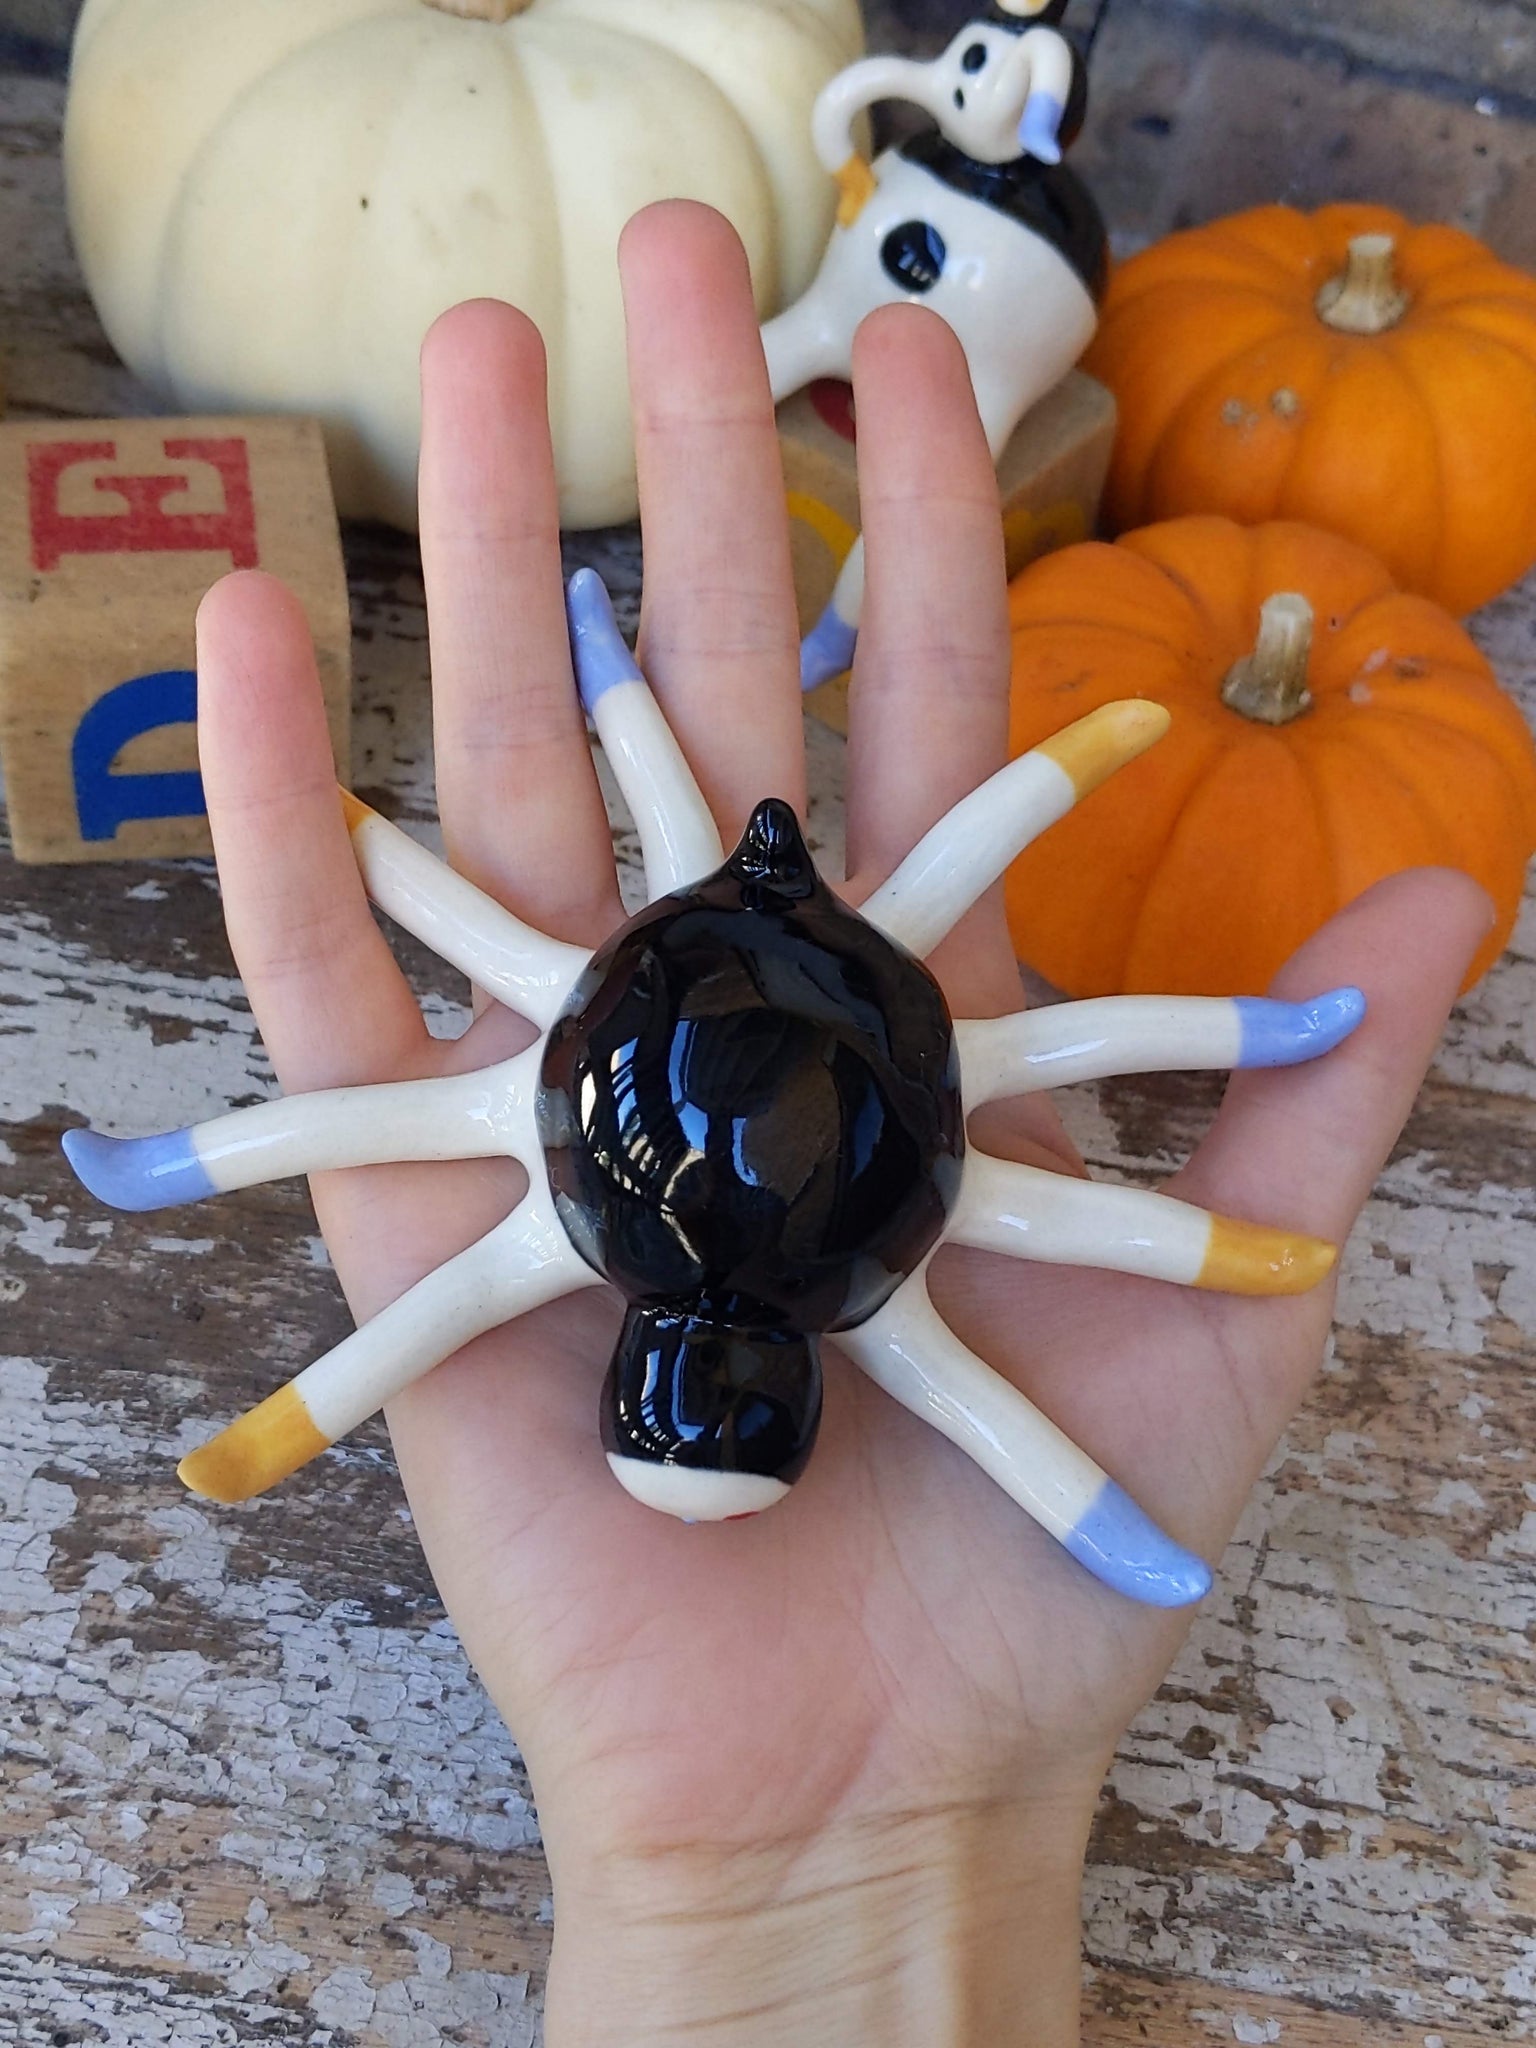 Tinybirdman Ceramic Art Toy [Octobirdman Extra Large]